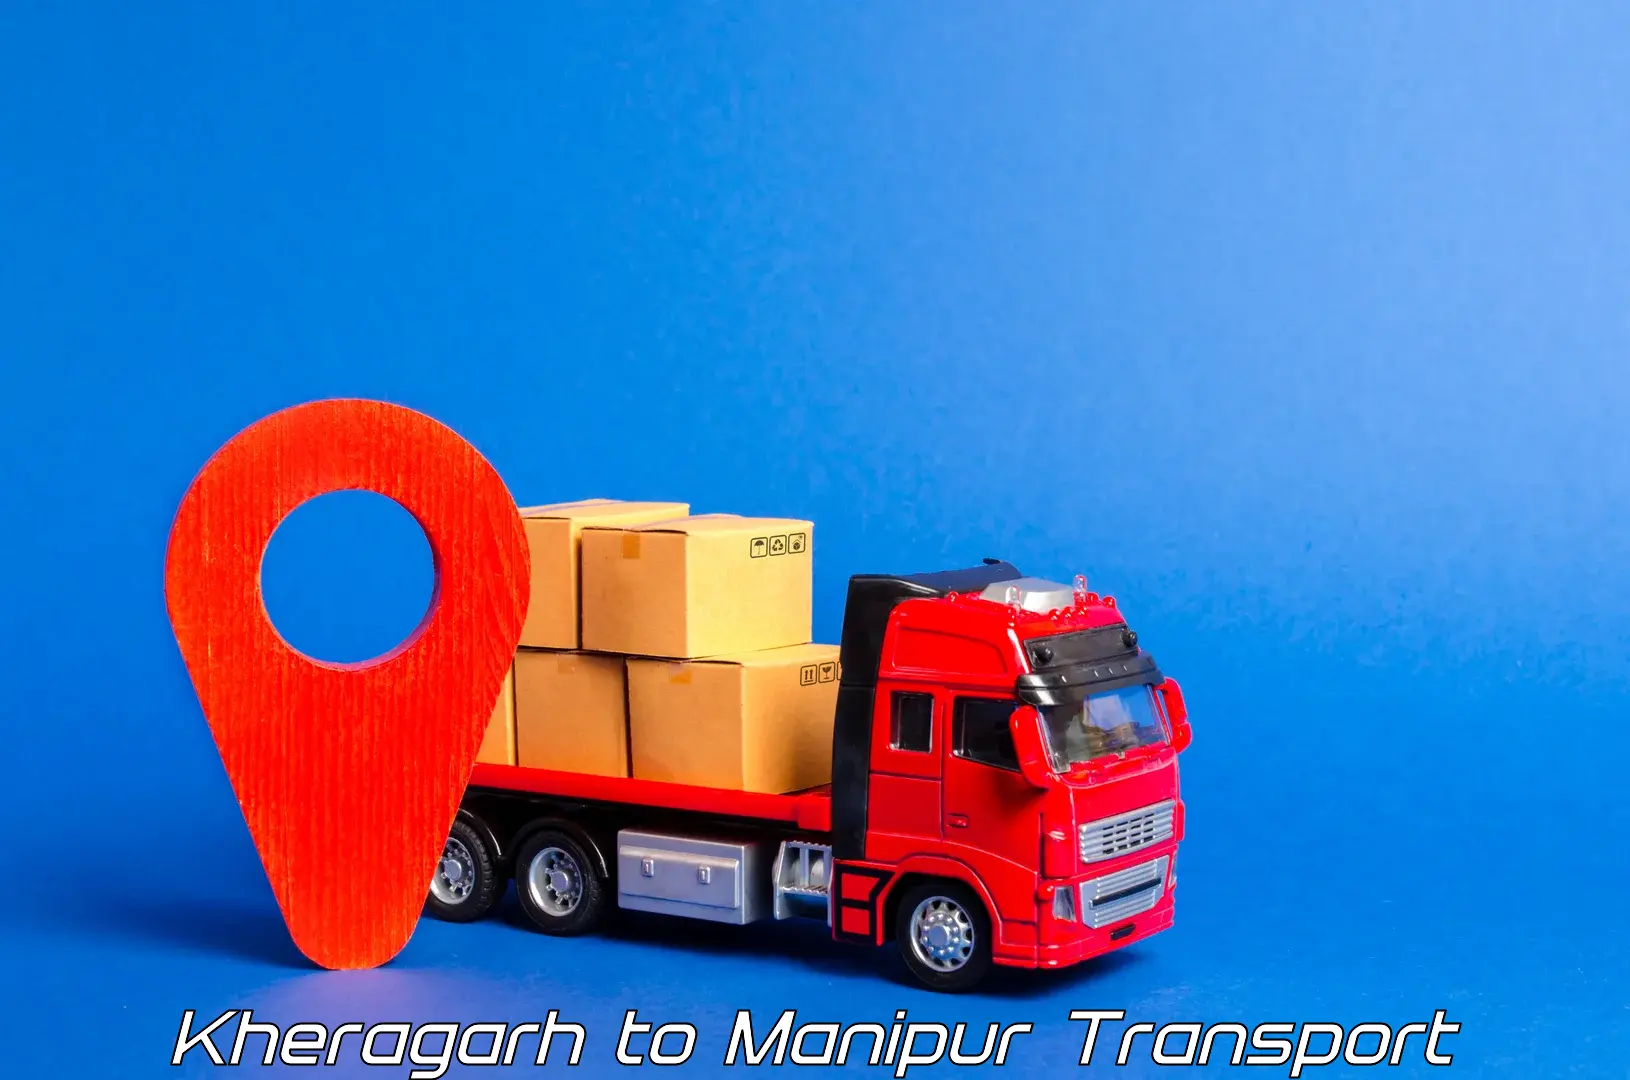 Furniture transport service in Kheragarh to Moirang